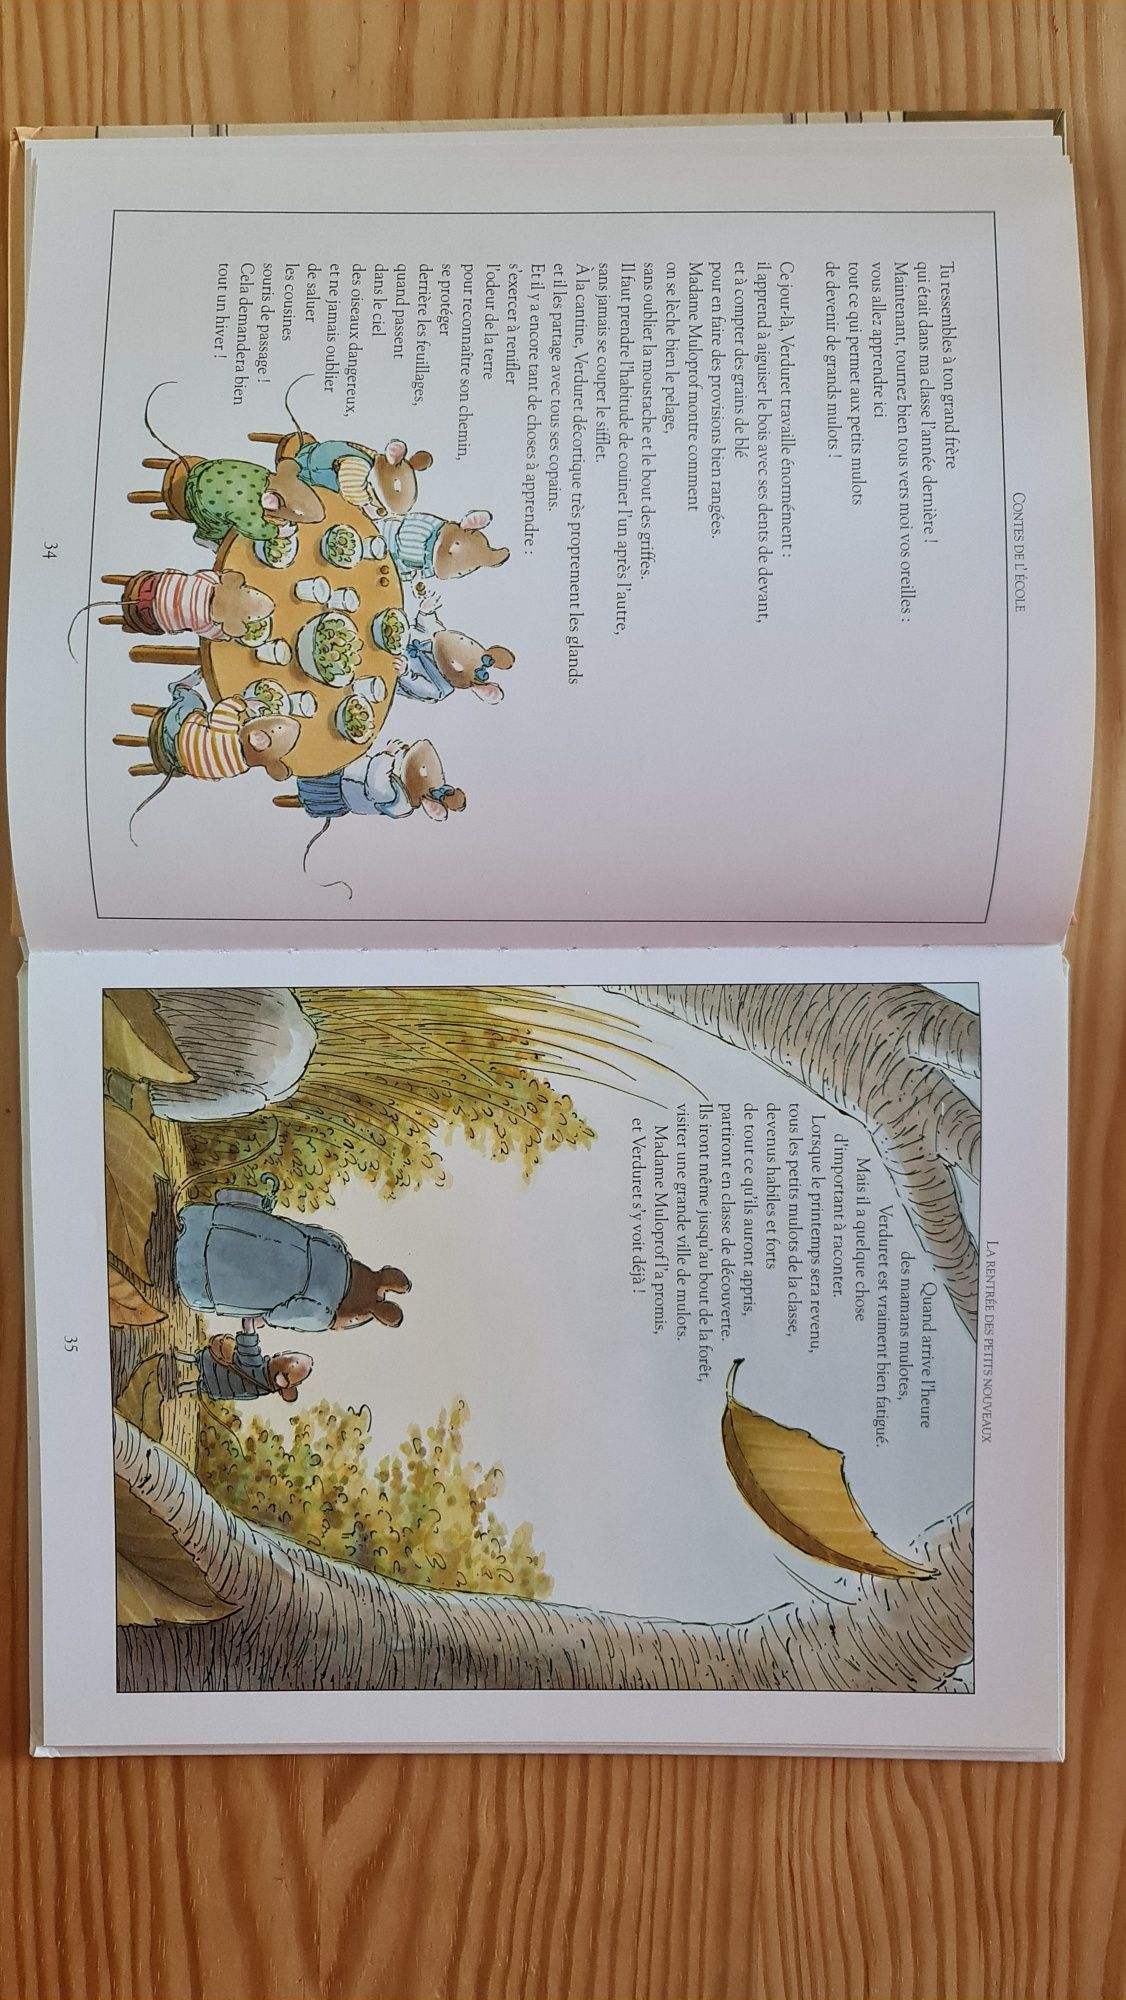 Contes de l'école książka po francusku livre en français